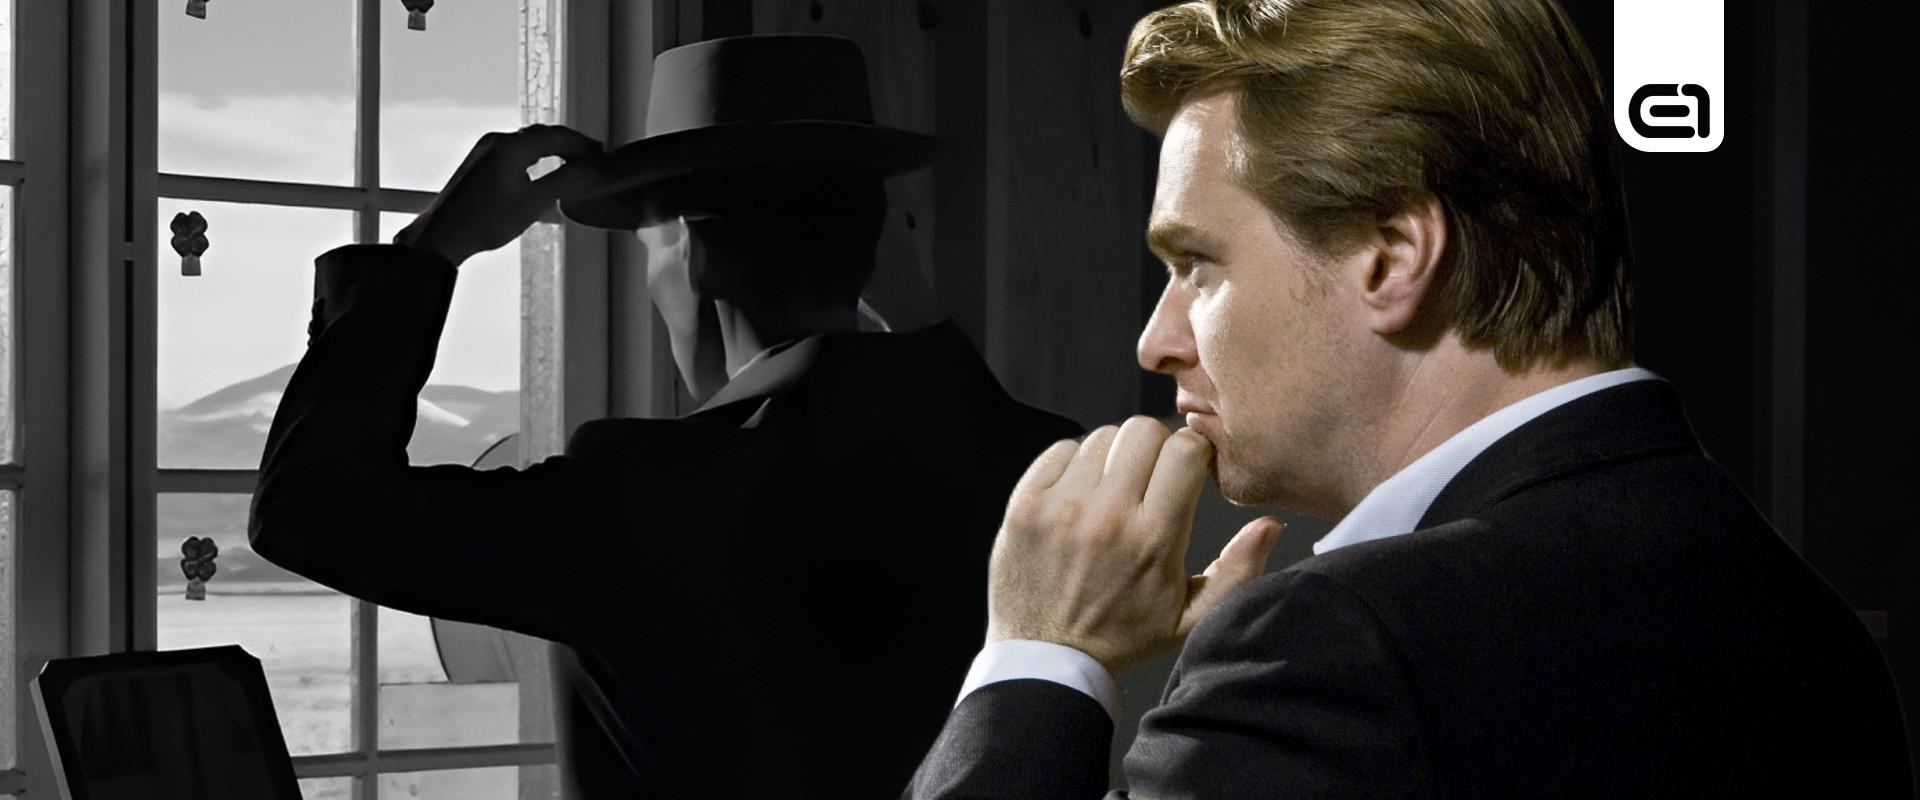 Christopher Nolan hatalmas tapsot kapott az Oppenheimer új bemutatója során